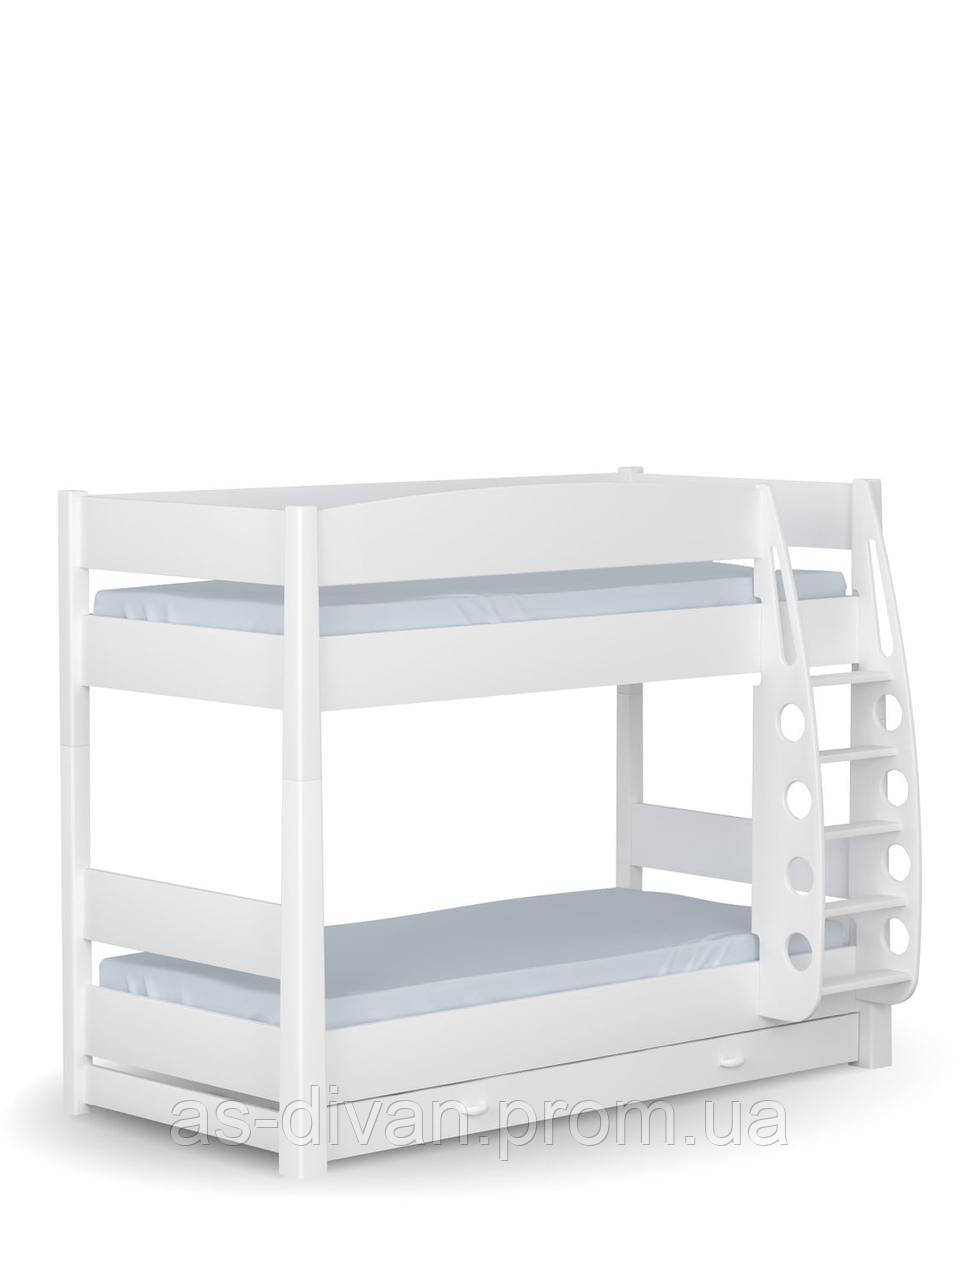 

Кровать двухъярусная 90x190 White